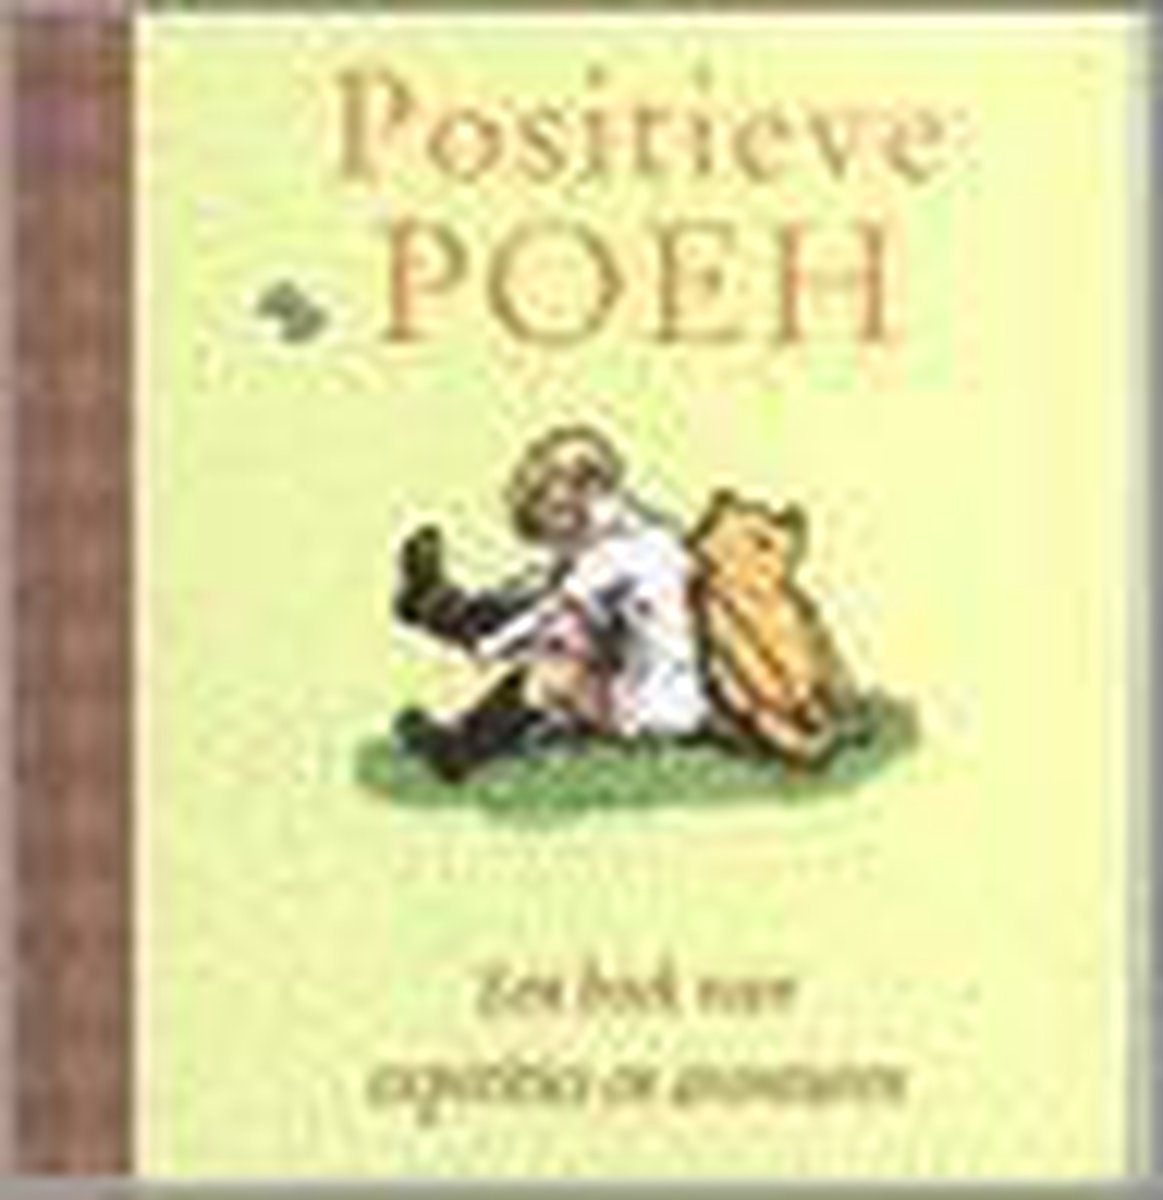 Positieve poeh, een boek voor exposities en avonturen